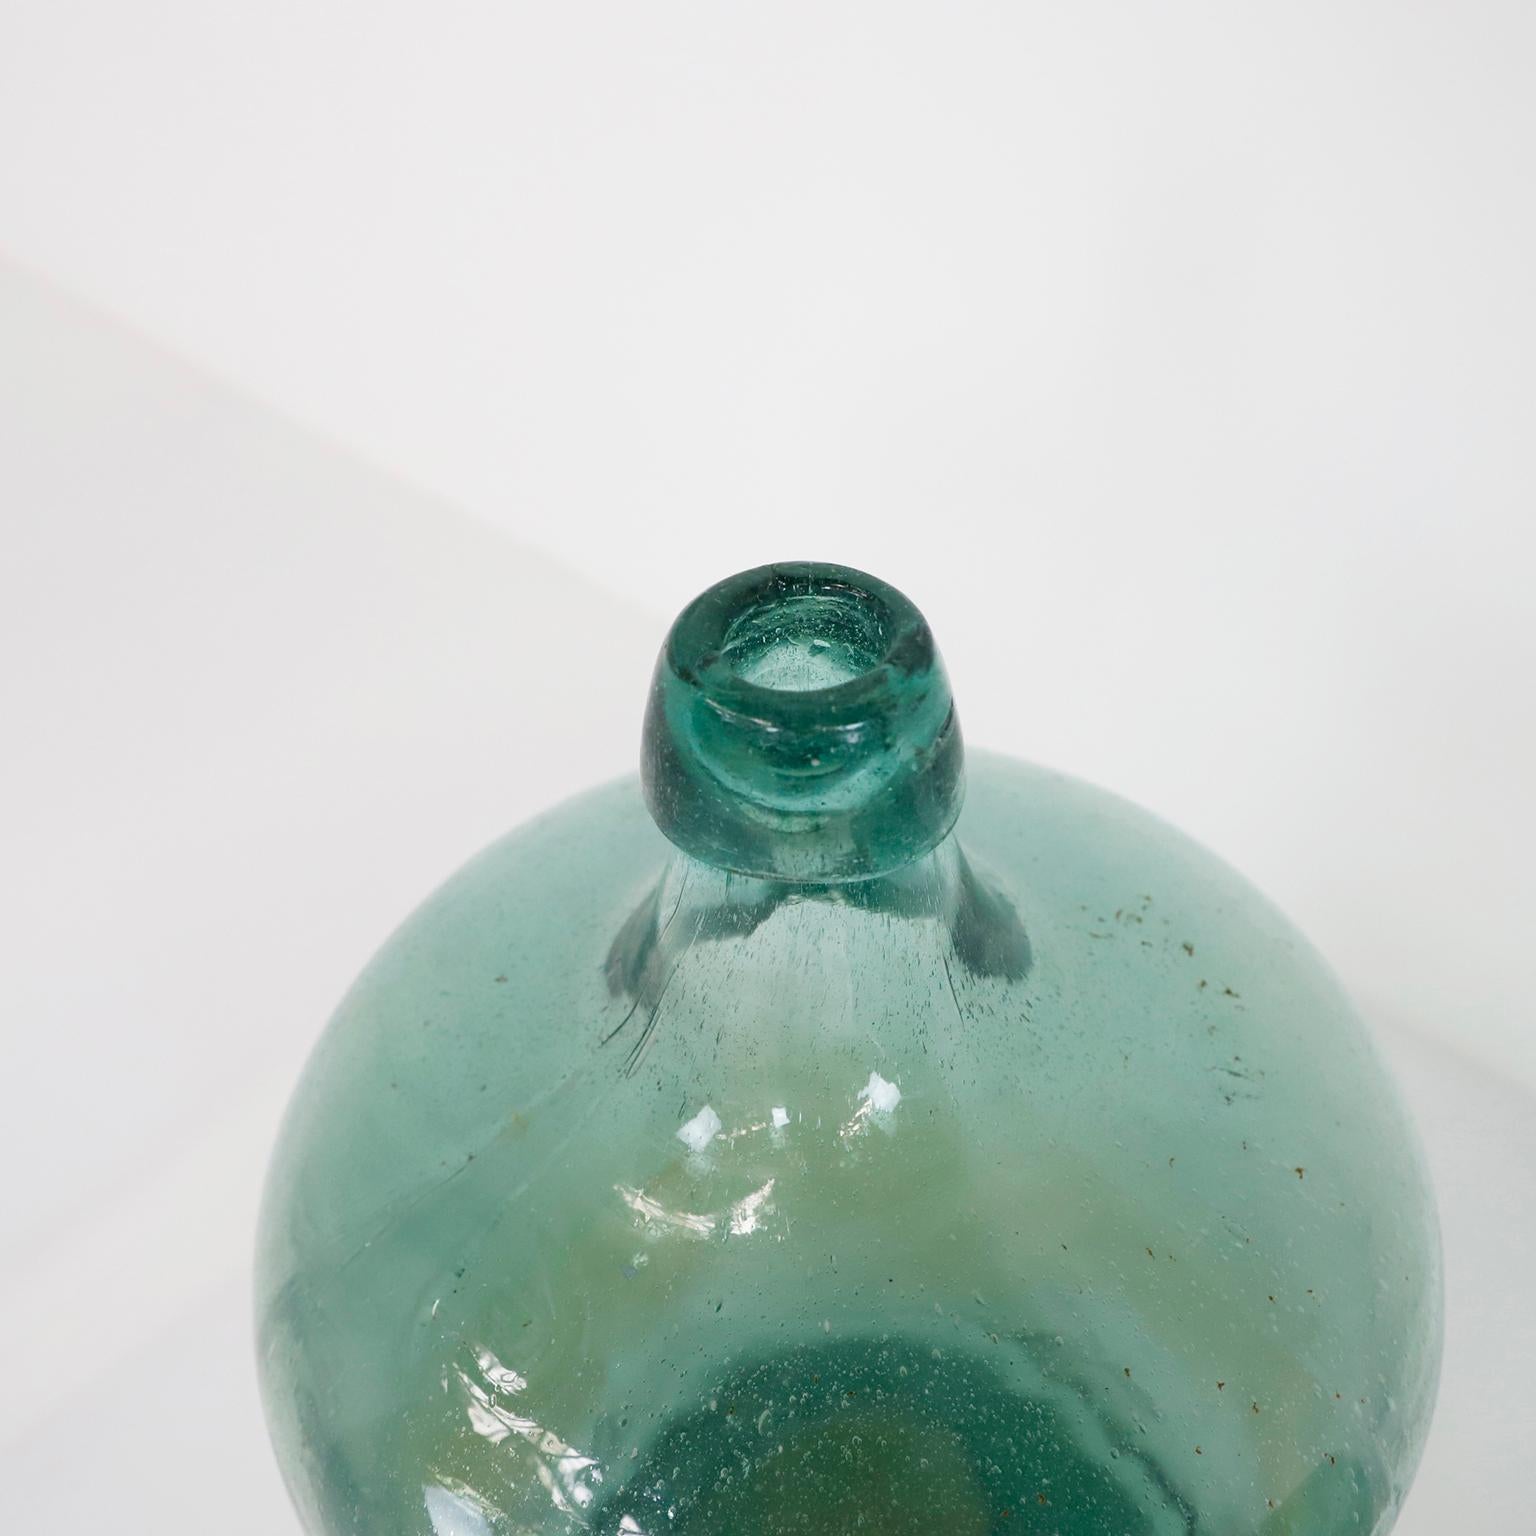 Circa 1940, bieten wir dieses Paar von antiken handgefertigten Wasserflaschen.